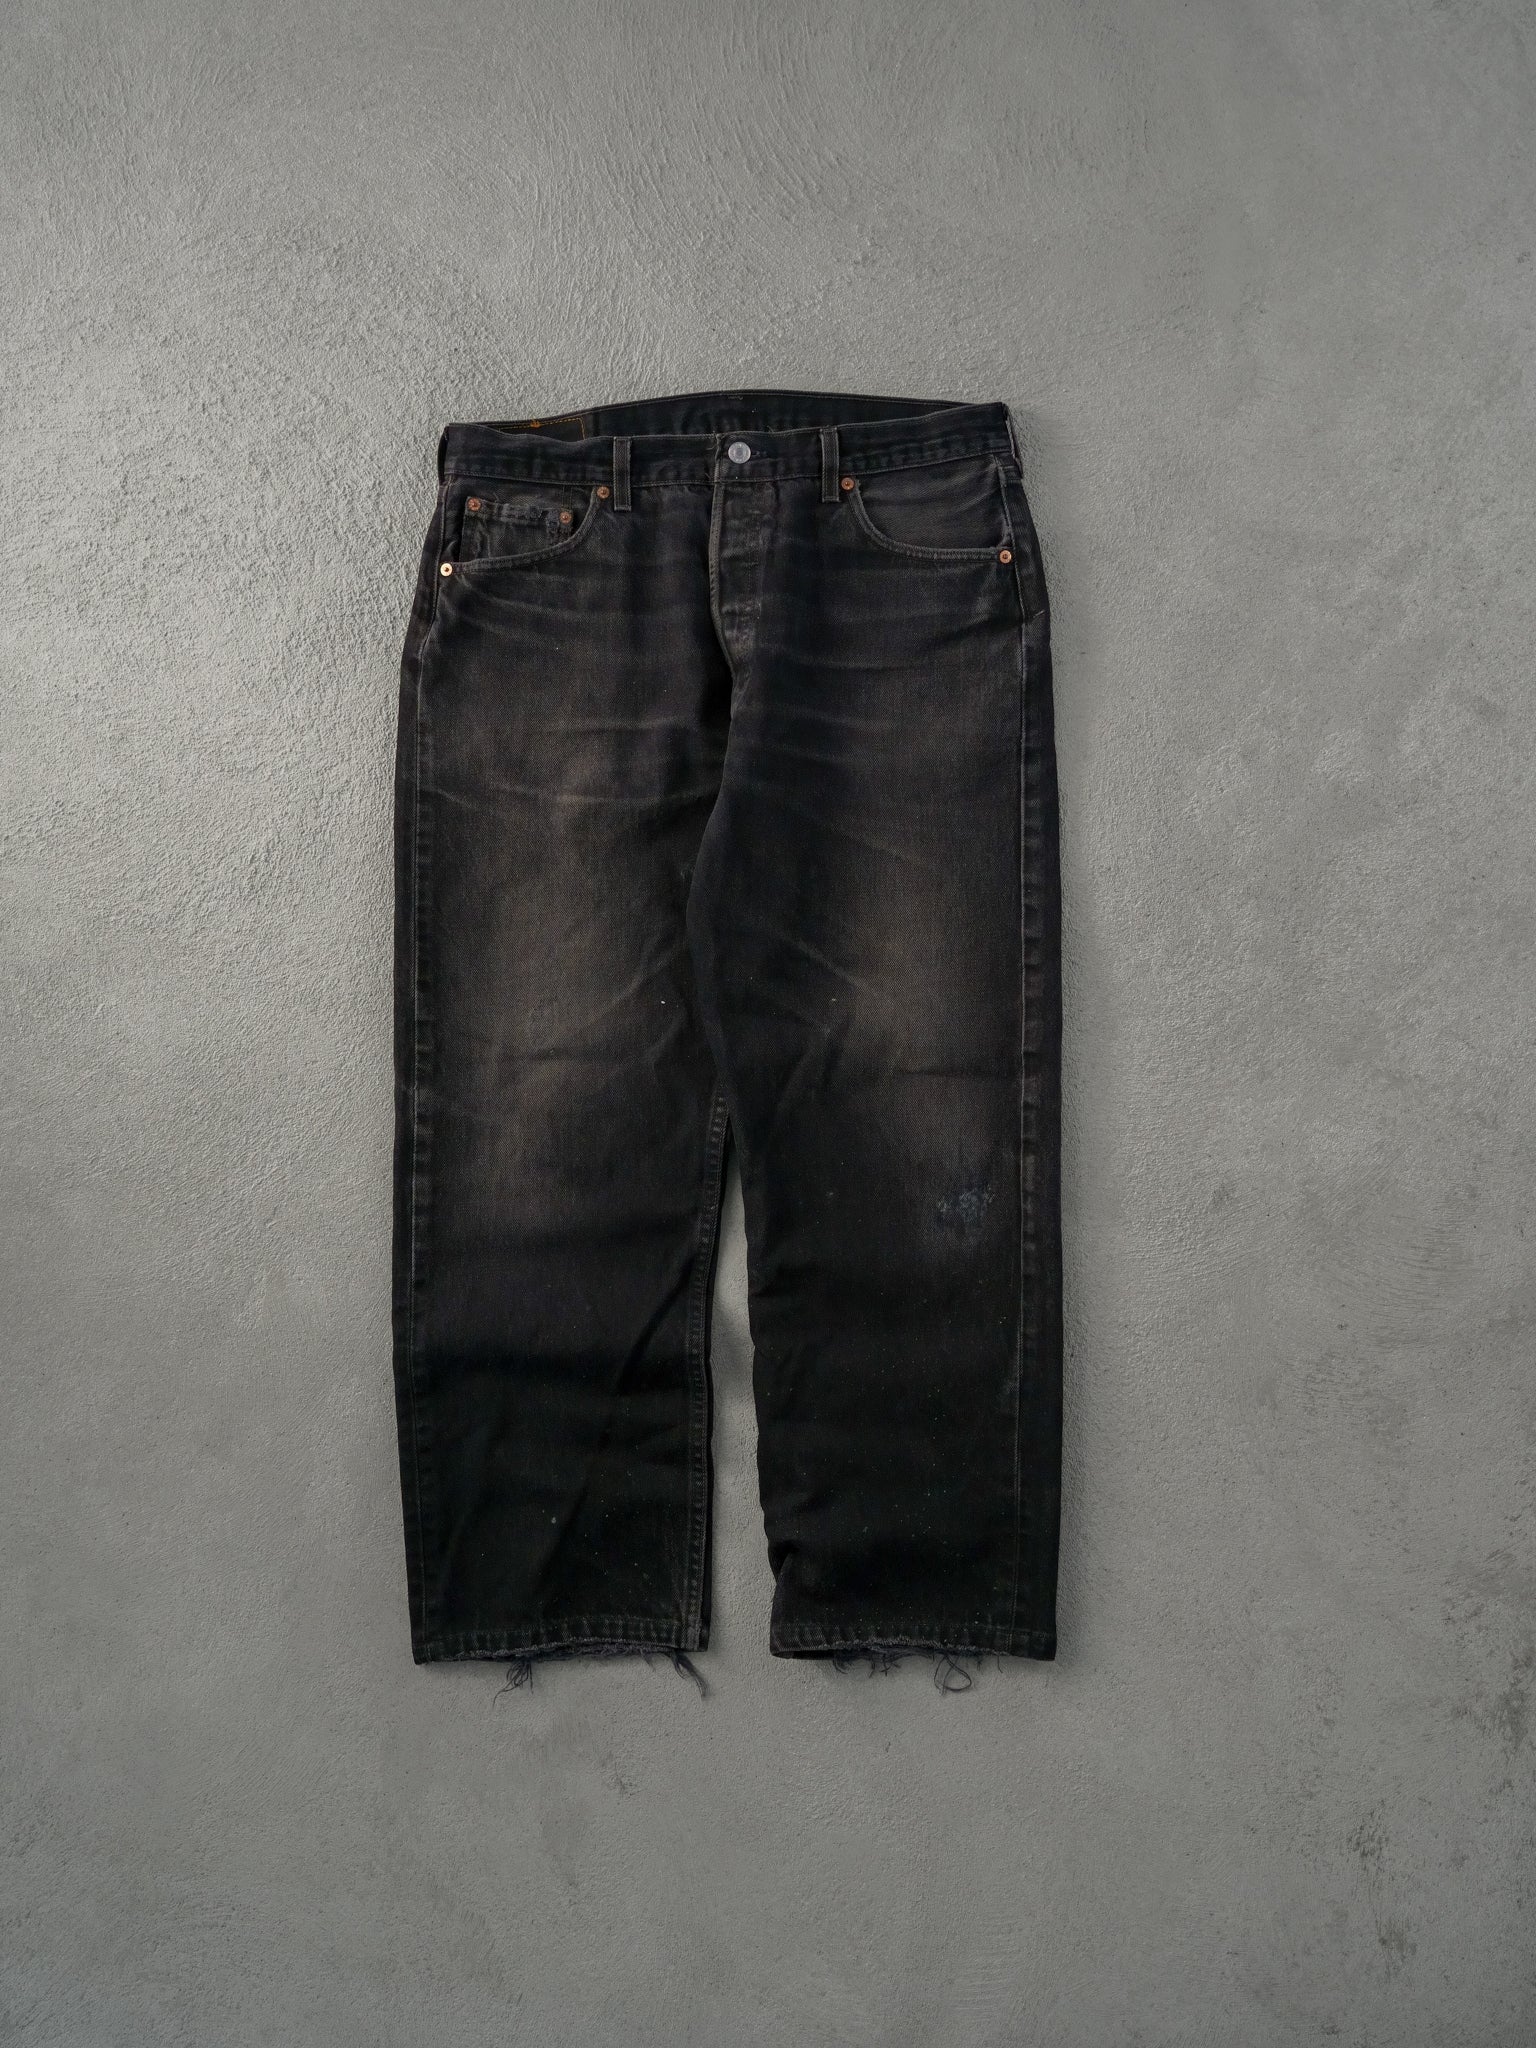 Vintage 90s Black Levi's 501 Denim Pants (36x28)